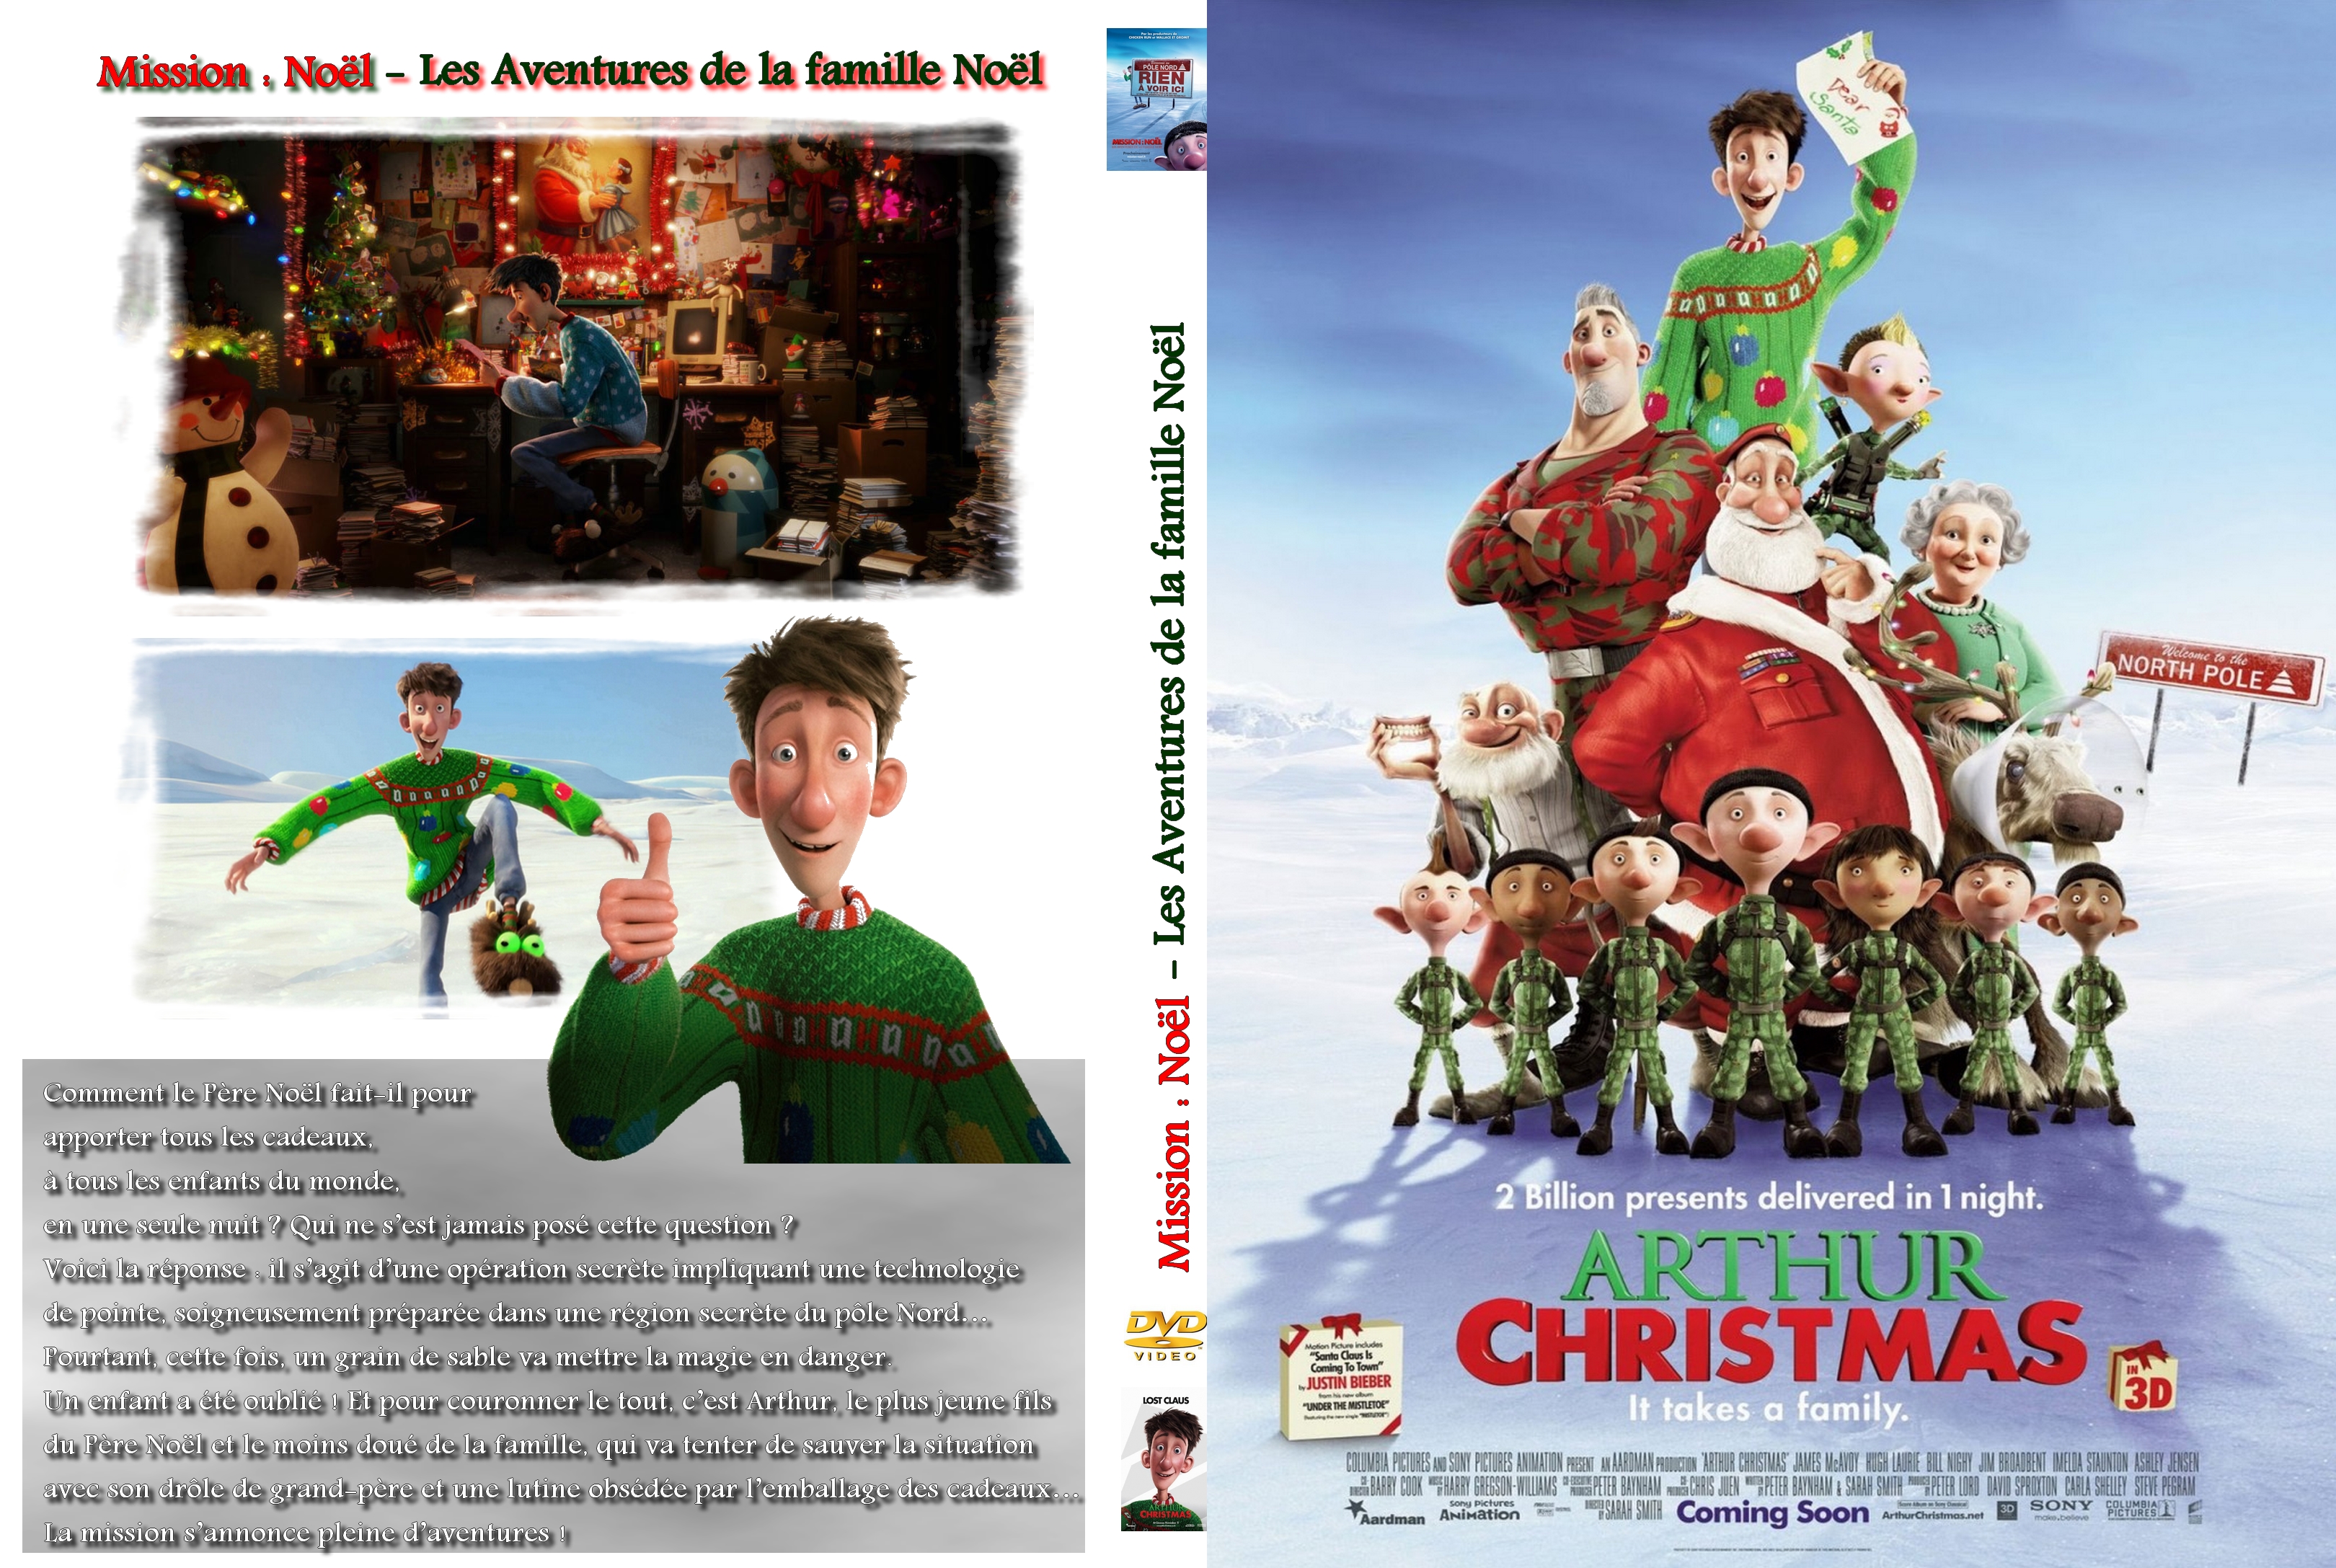 Jaquette DVD Mission Noel - Les aventures de la famille noel custom